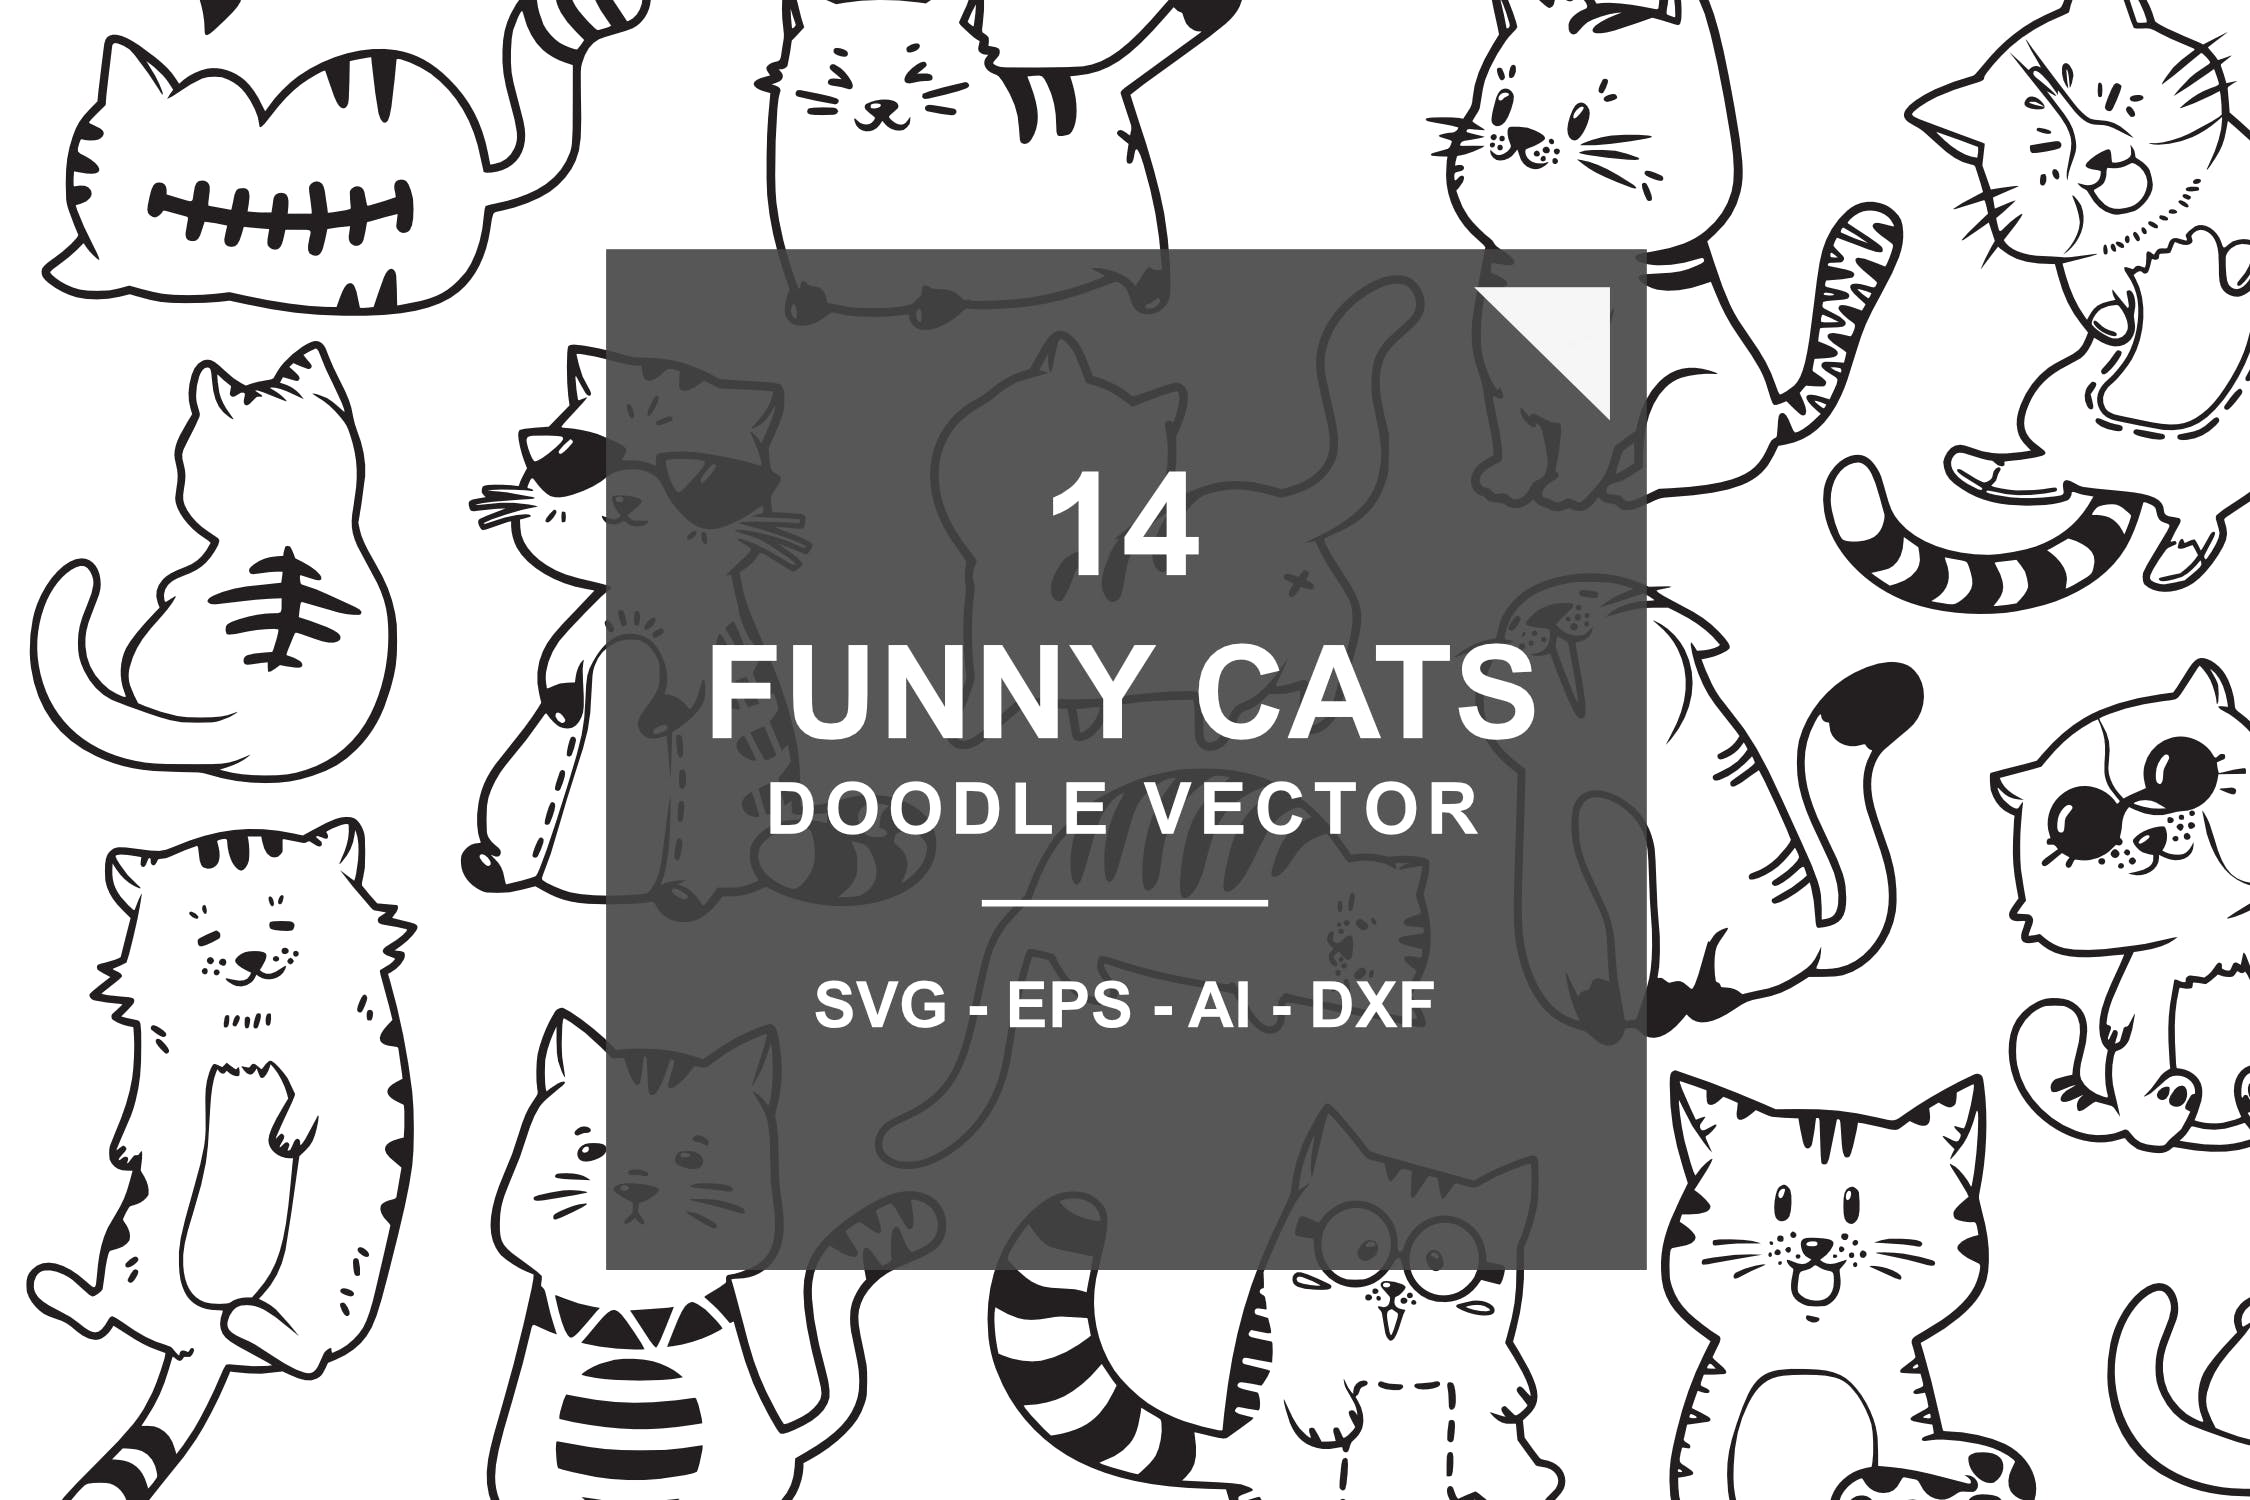 猫咪手绘涂鸦创意图标源文件下载Cute and Funny Cats Doodle Vector